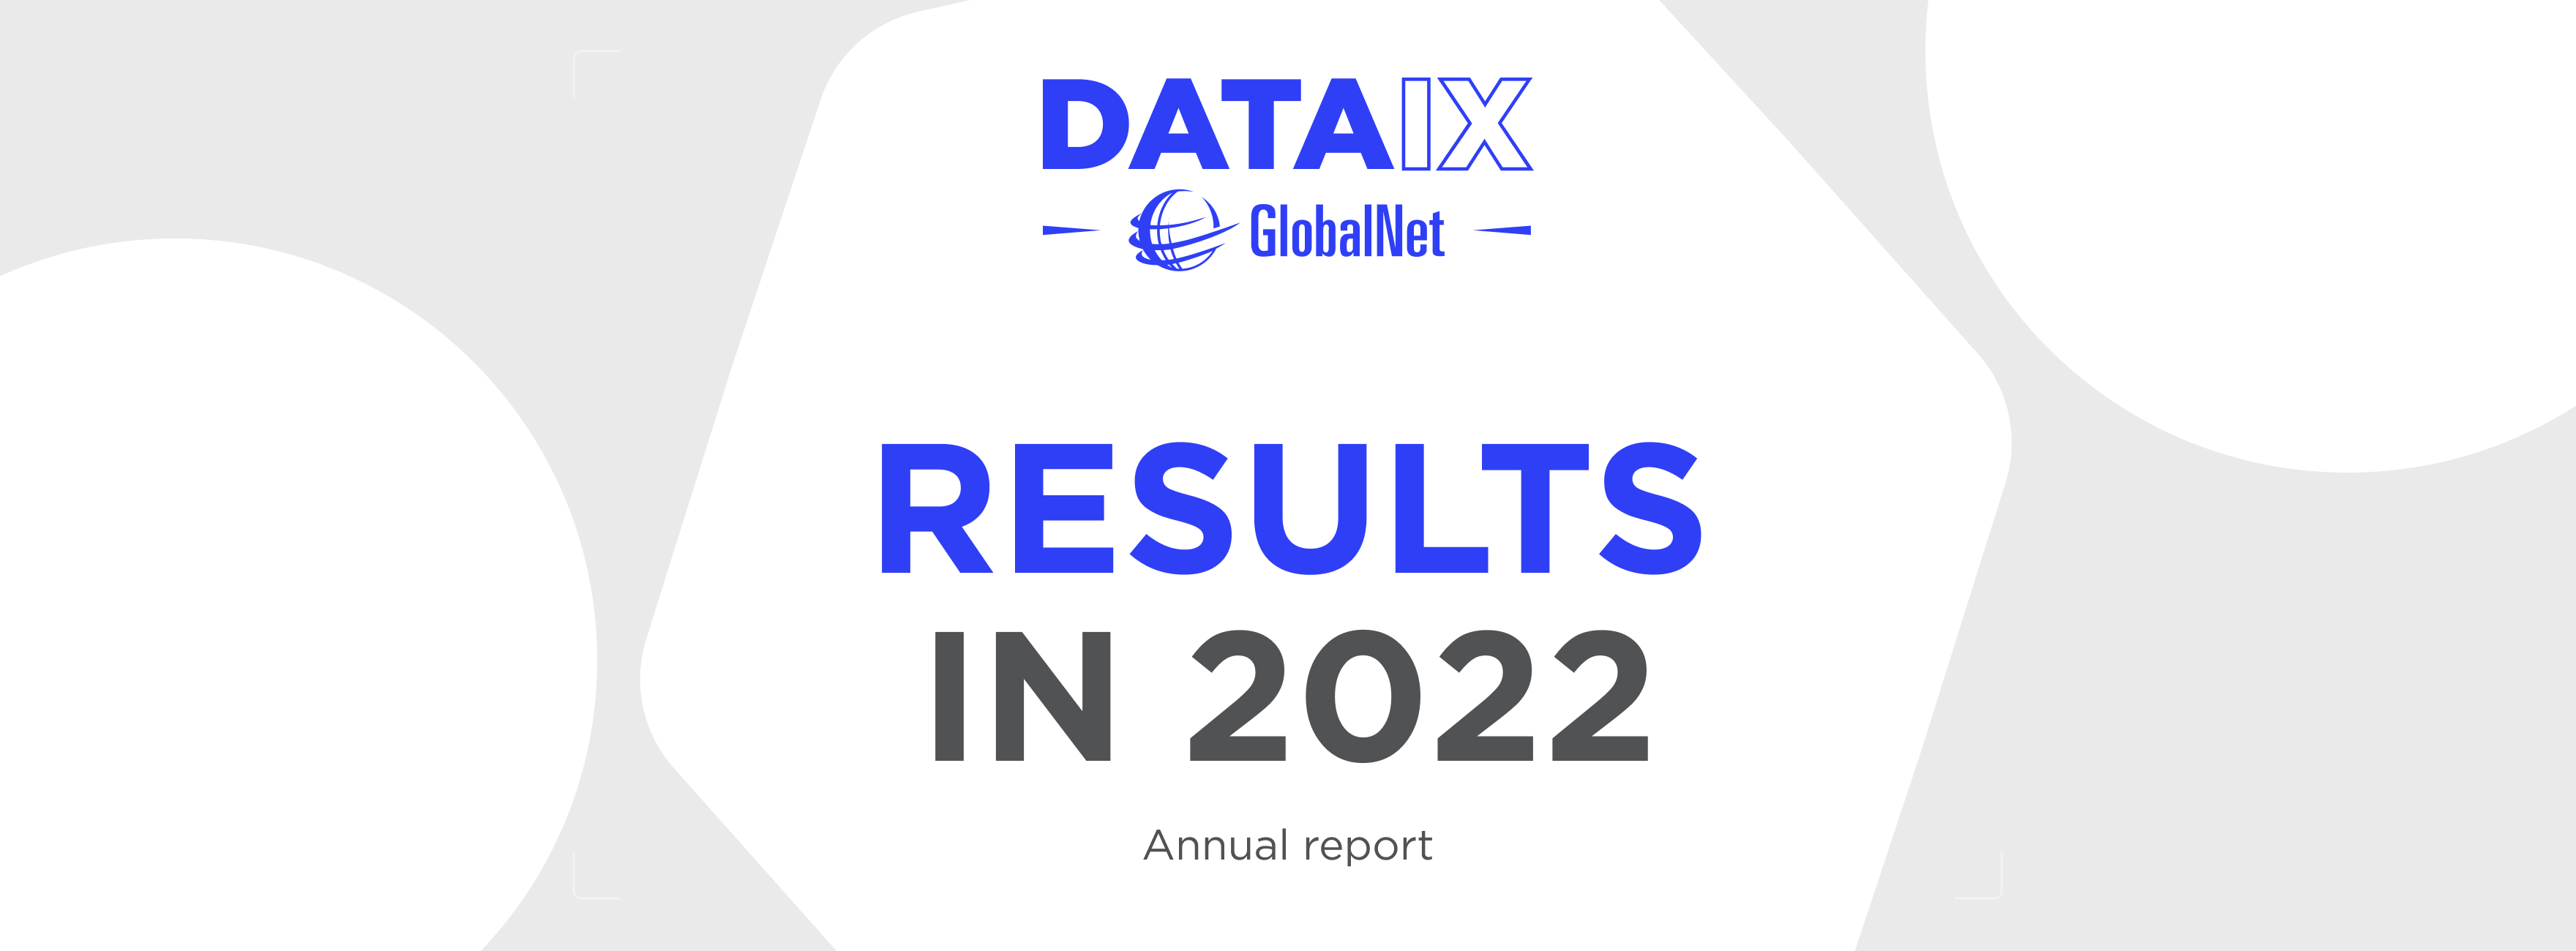 Годовой отчет GlobalNet/DATAIX за 2022 год